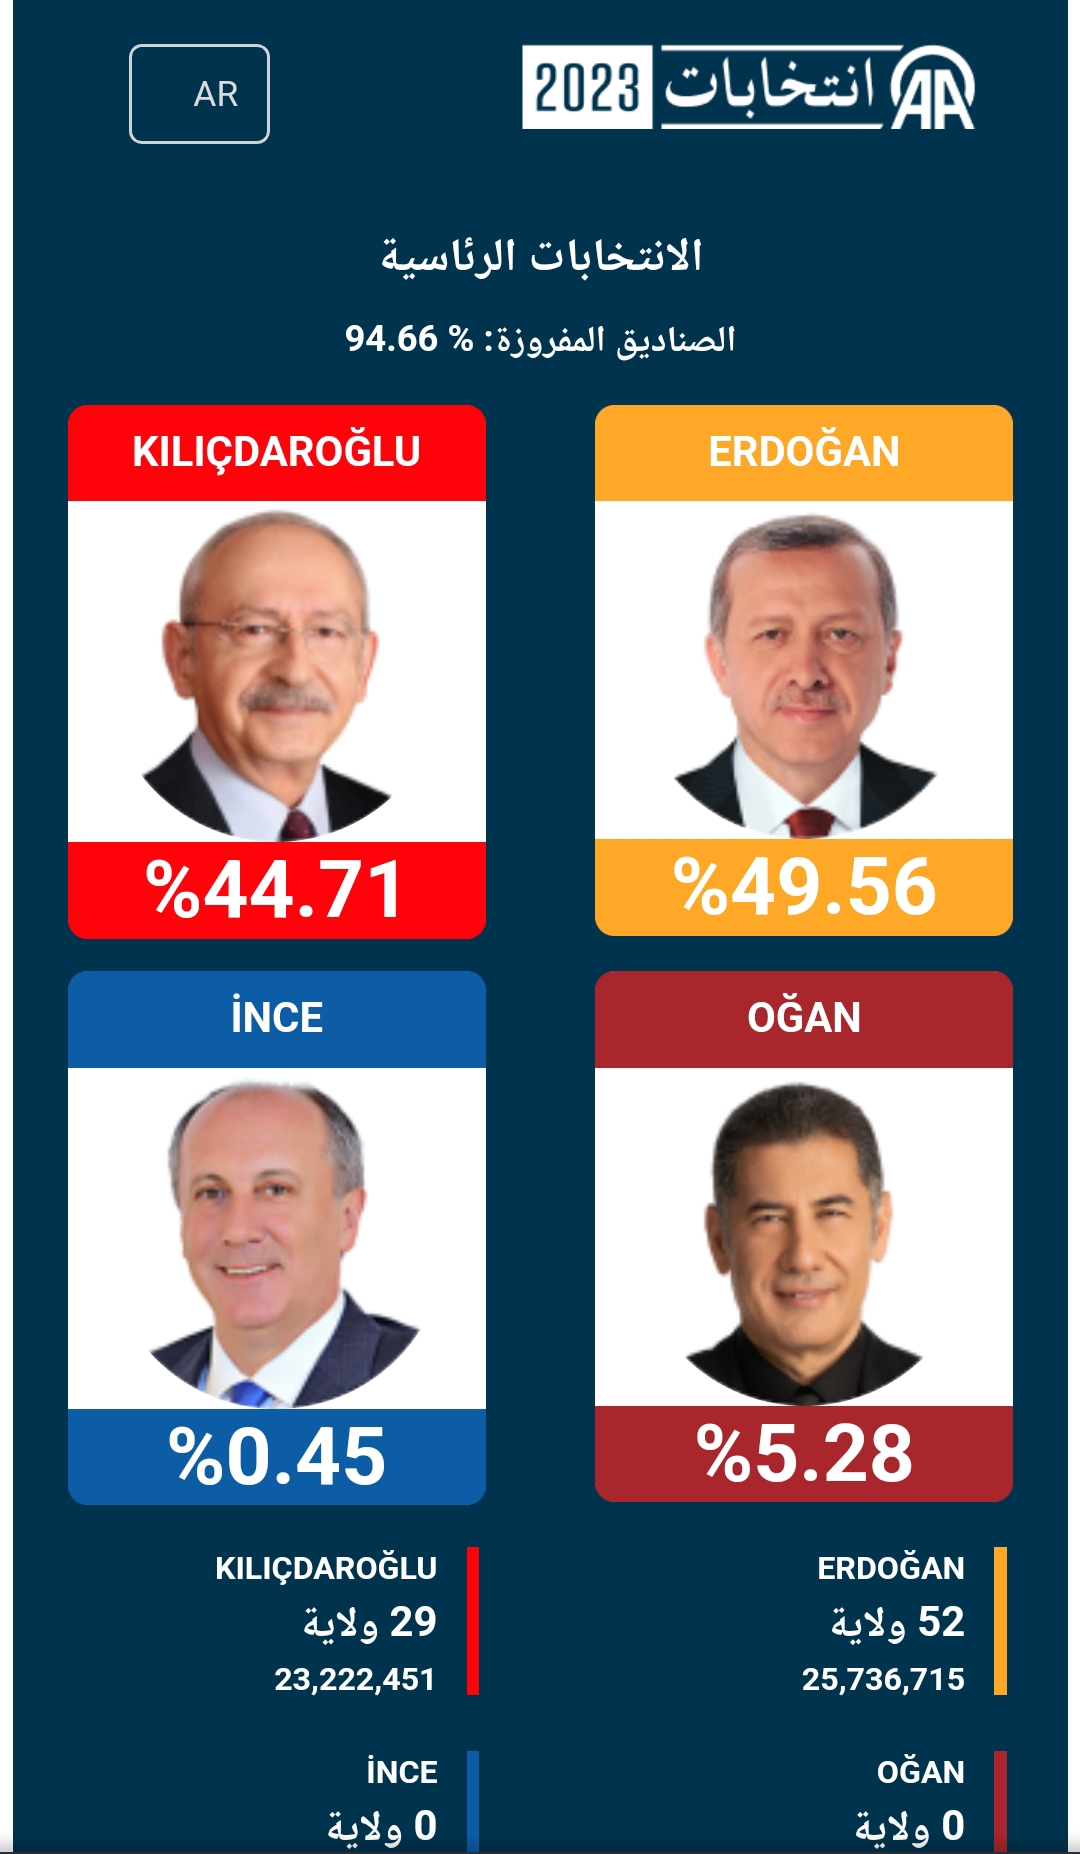 شاهد بالصور .. اخر تحديث للانتخبات التركية و اول تصريح من حزب اردوغان 